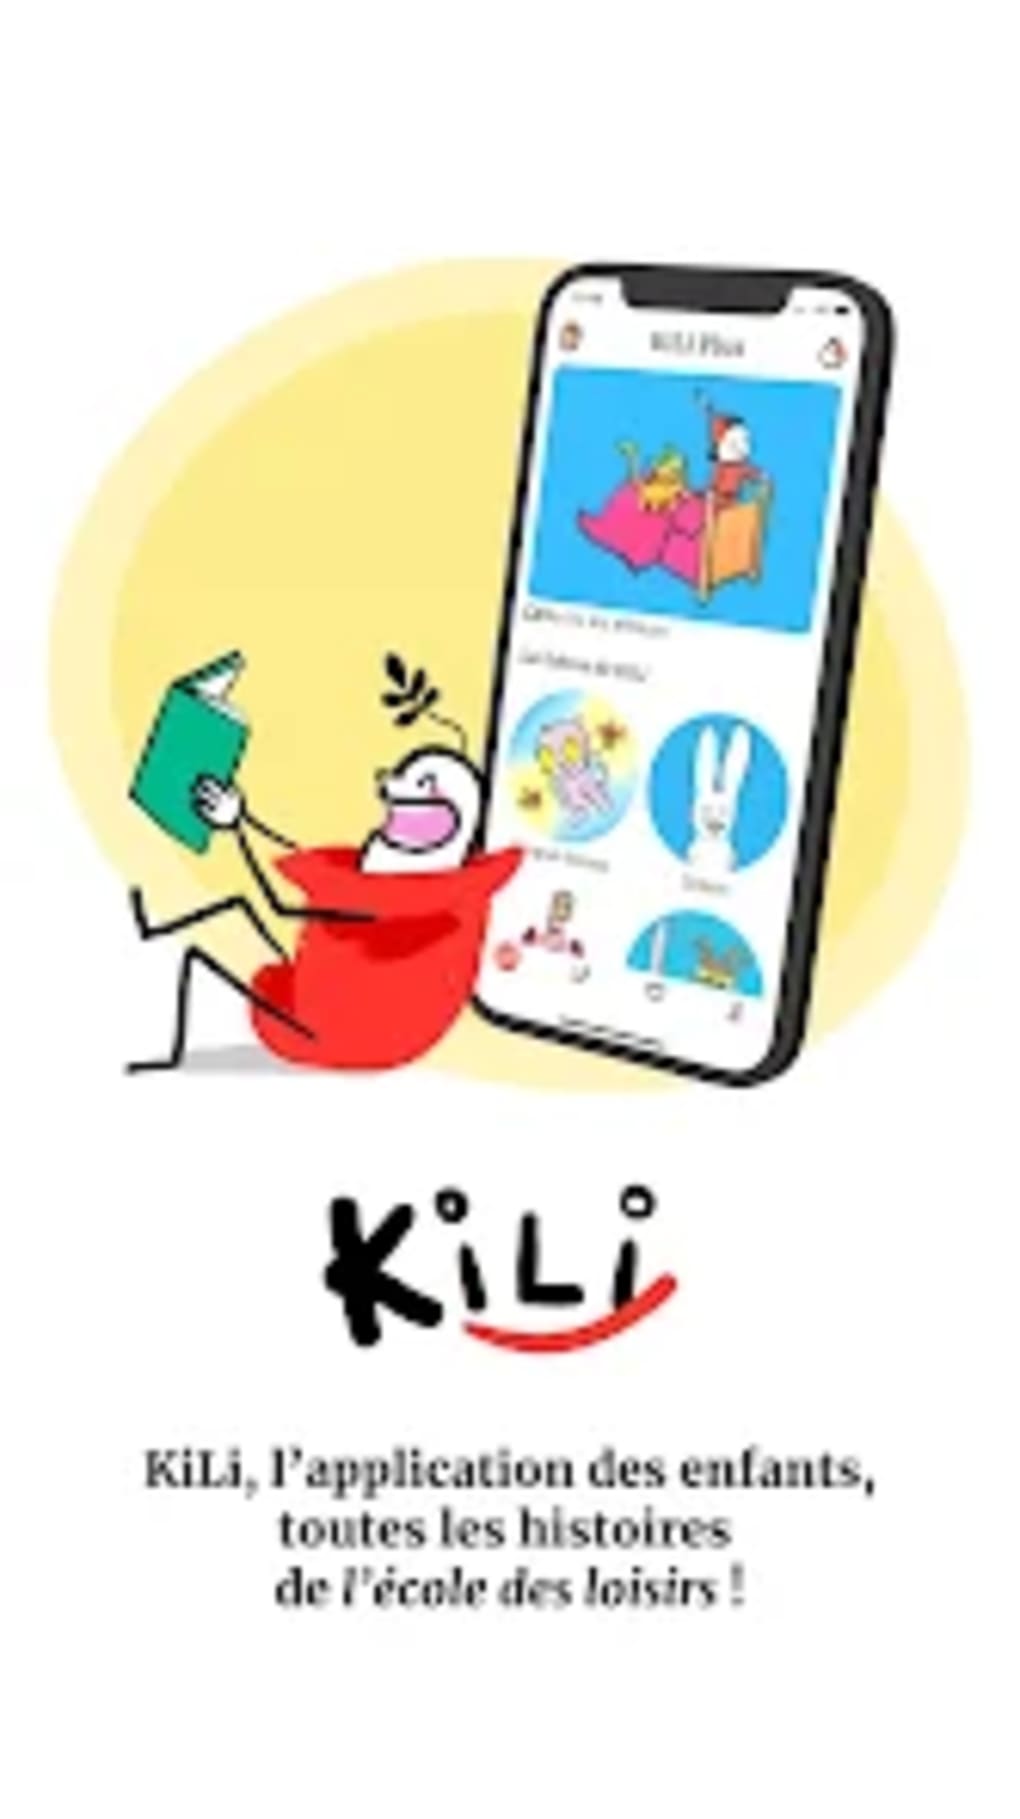 KiLi lappli des enfants for Android - Download